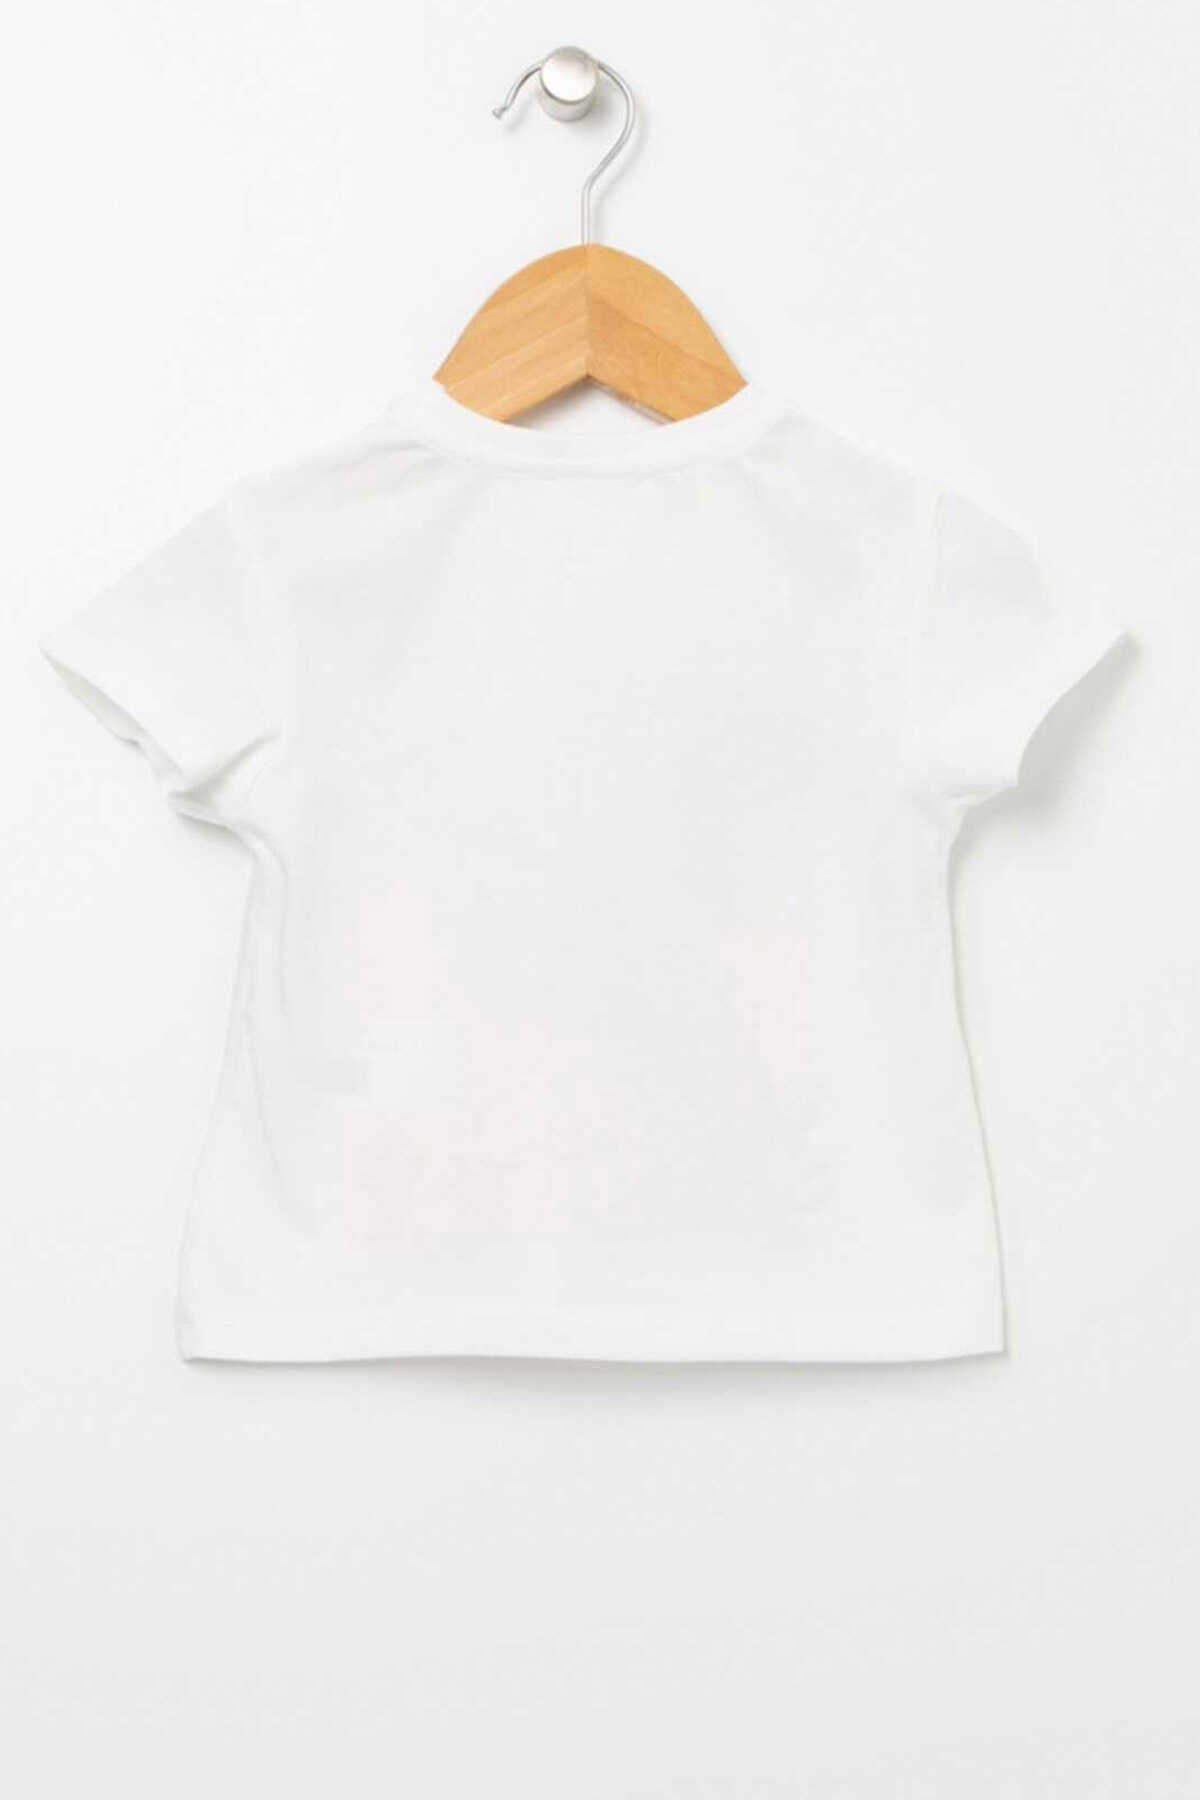 تیشرت نوزاد چاپ دار یقه گرد سفید برند Mammaramma